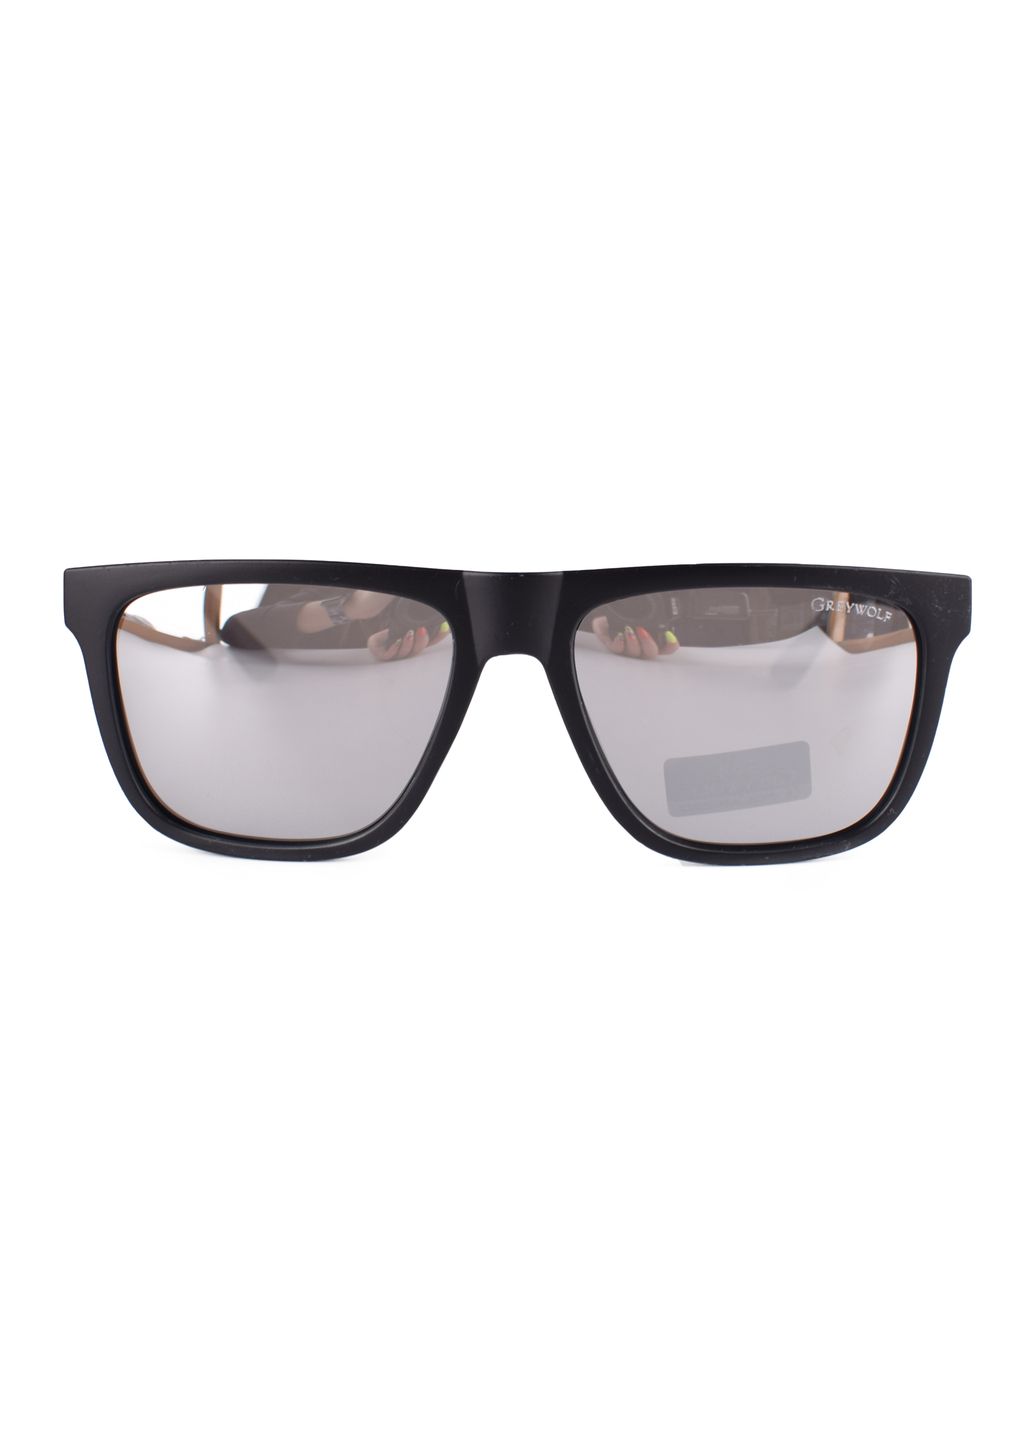 Купить Черные мужские солнцезащитные очки Gray Wolf с поряризацией GW5112 121014 в интернет-магазине